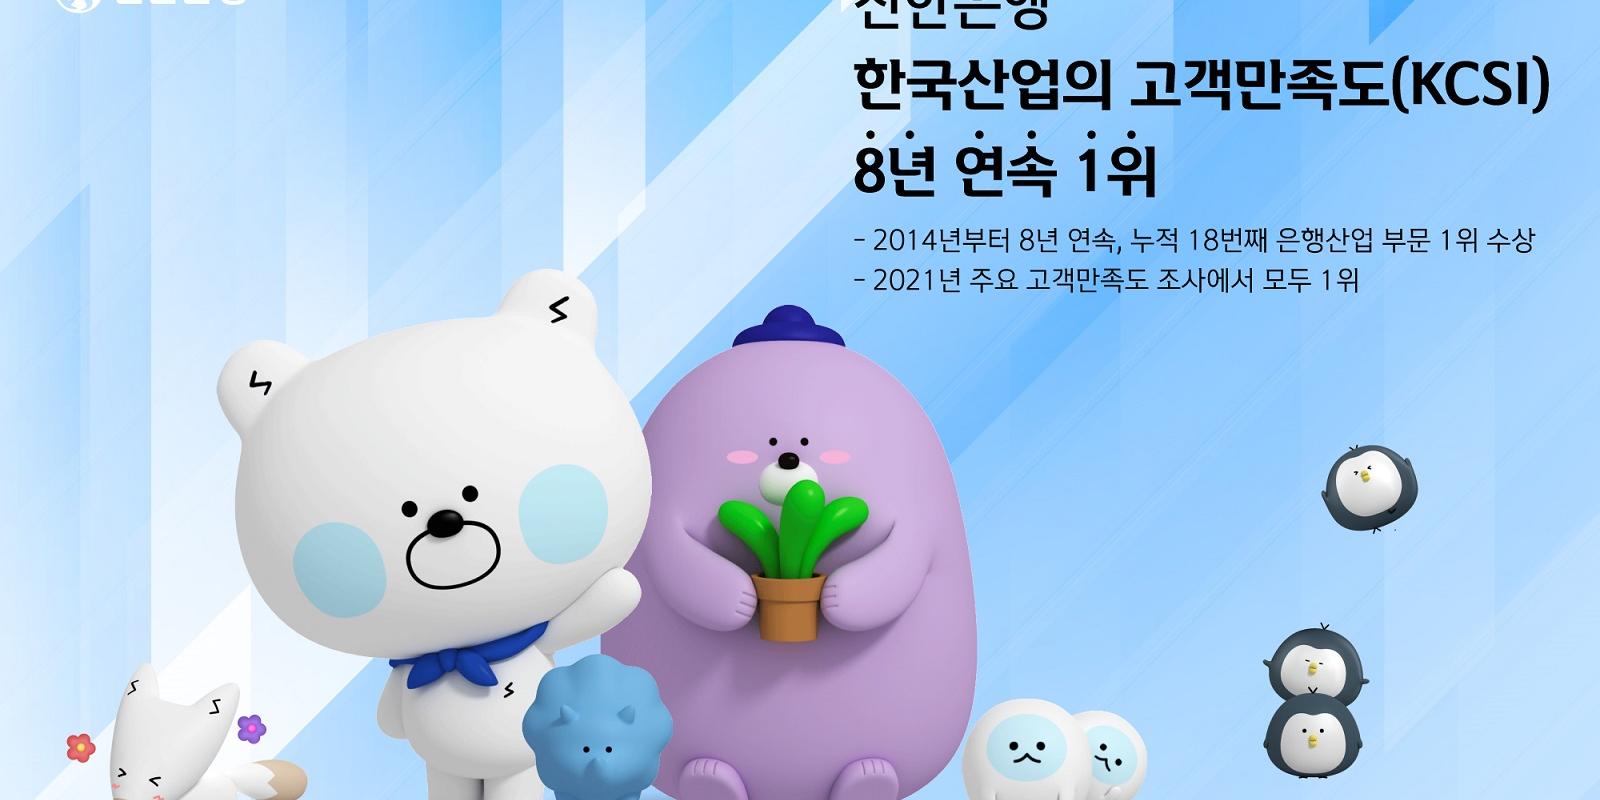 신한은행 신한카드 삼성생명 삼성화재 삼성증권, 고객만족도 1위 차지